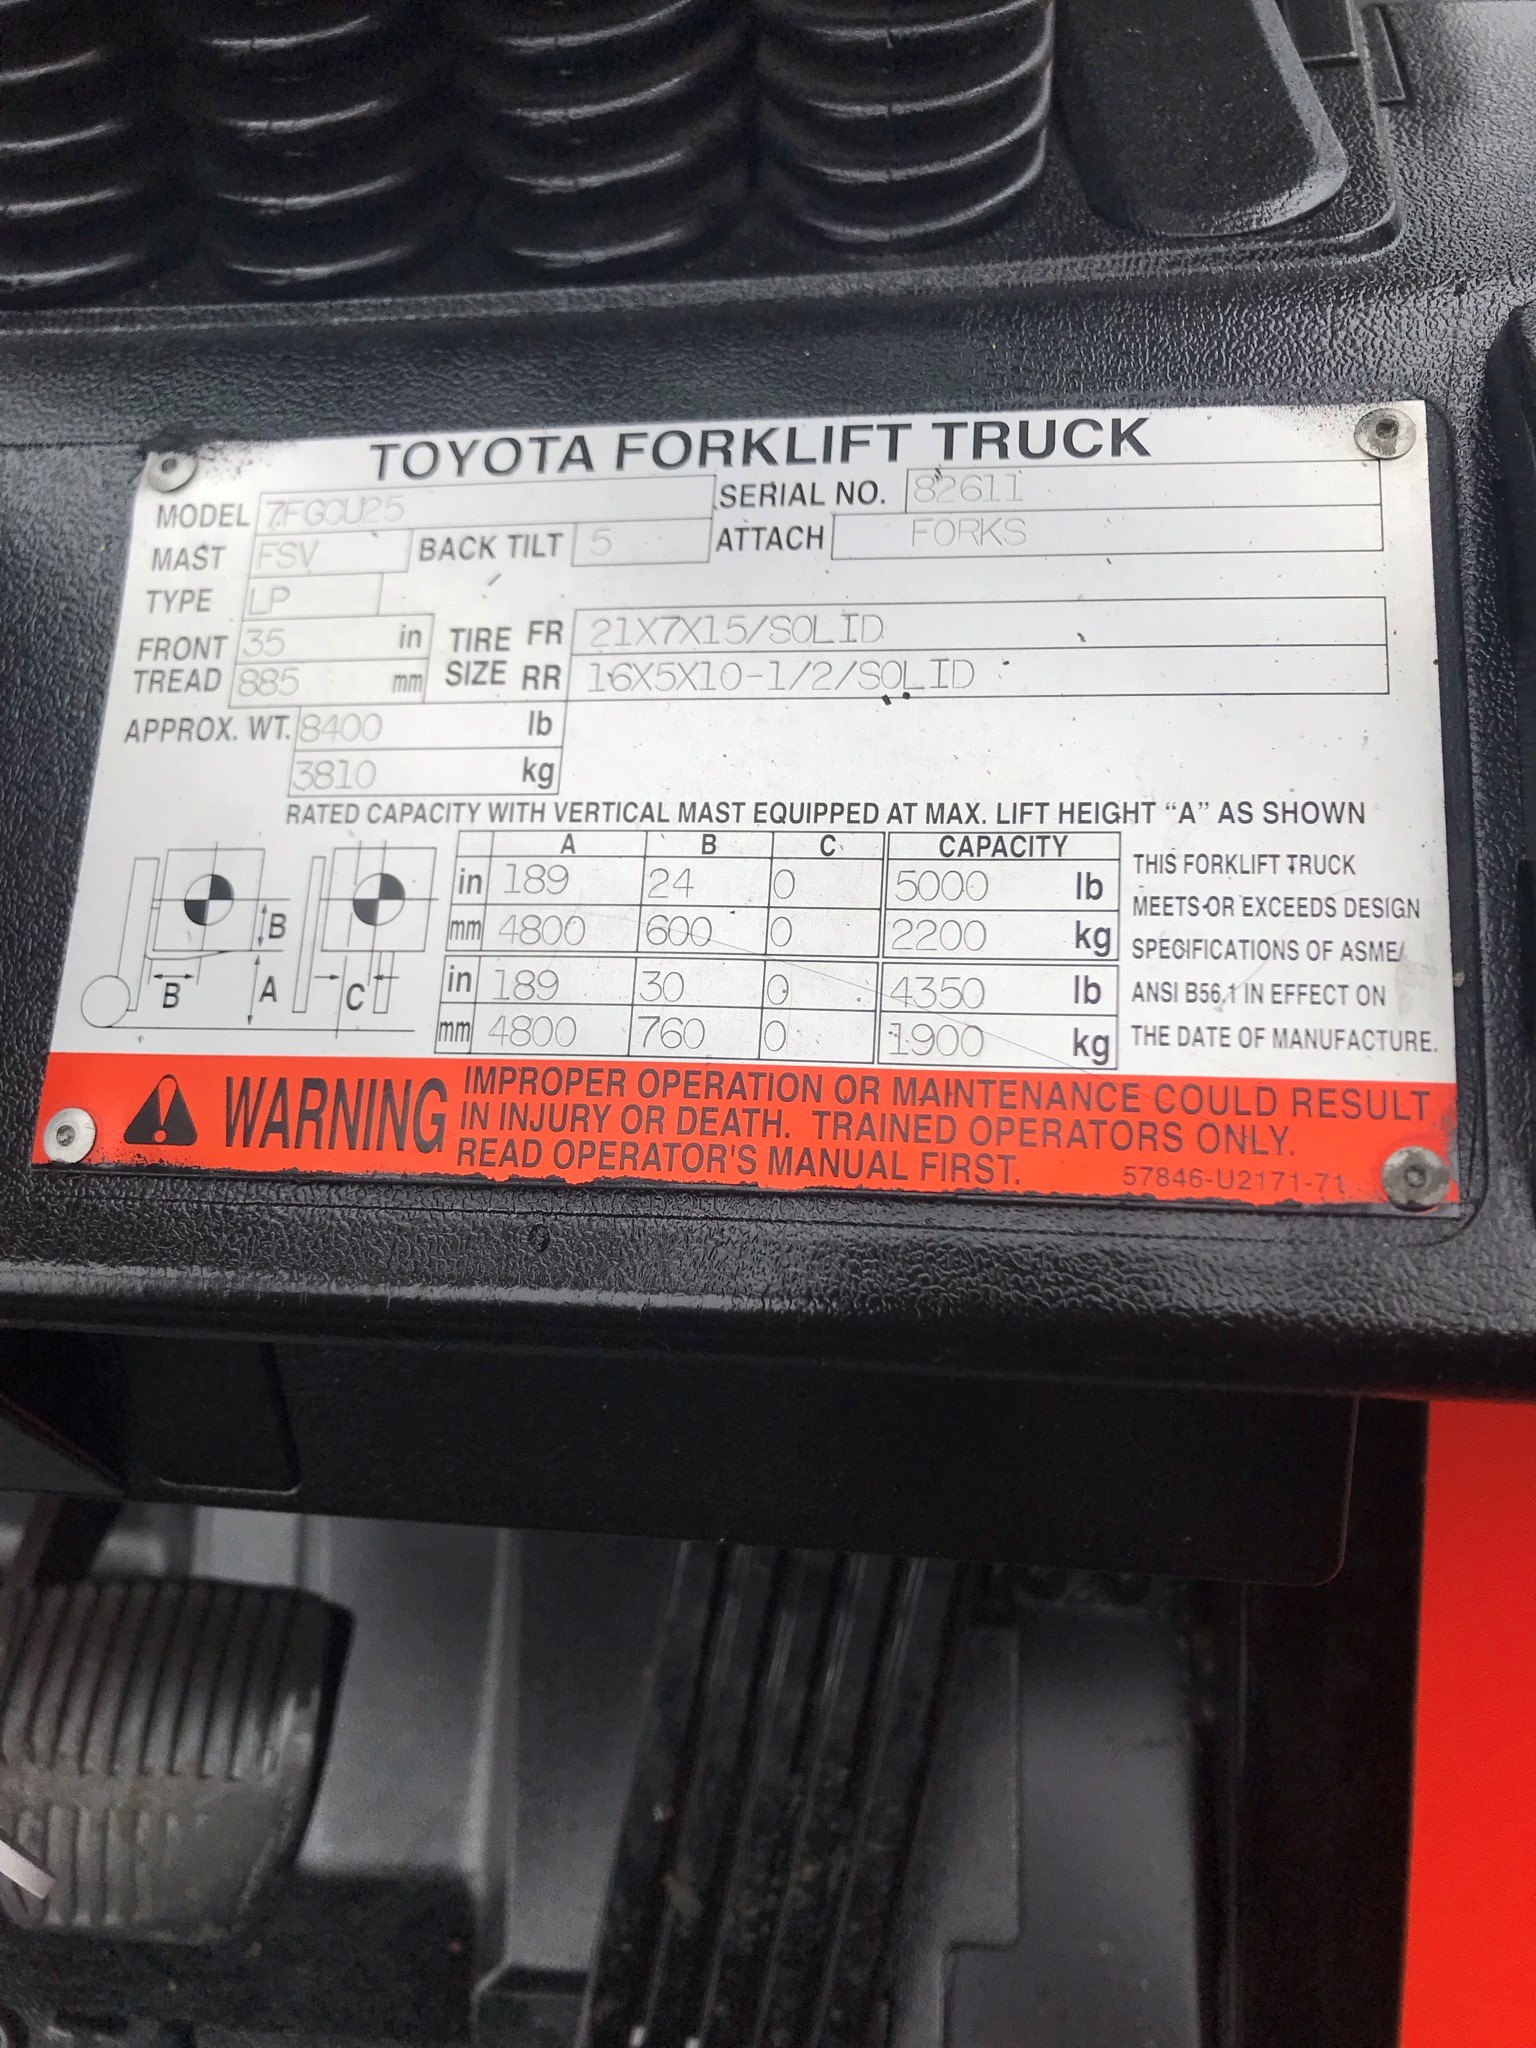 Model 7FGCU25 orange toyota forklift with serial number 82611 for sale